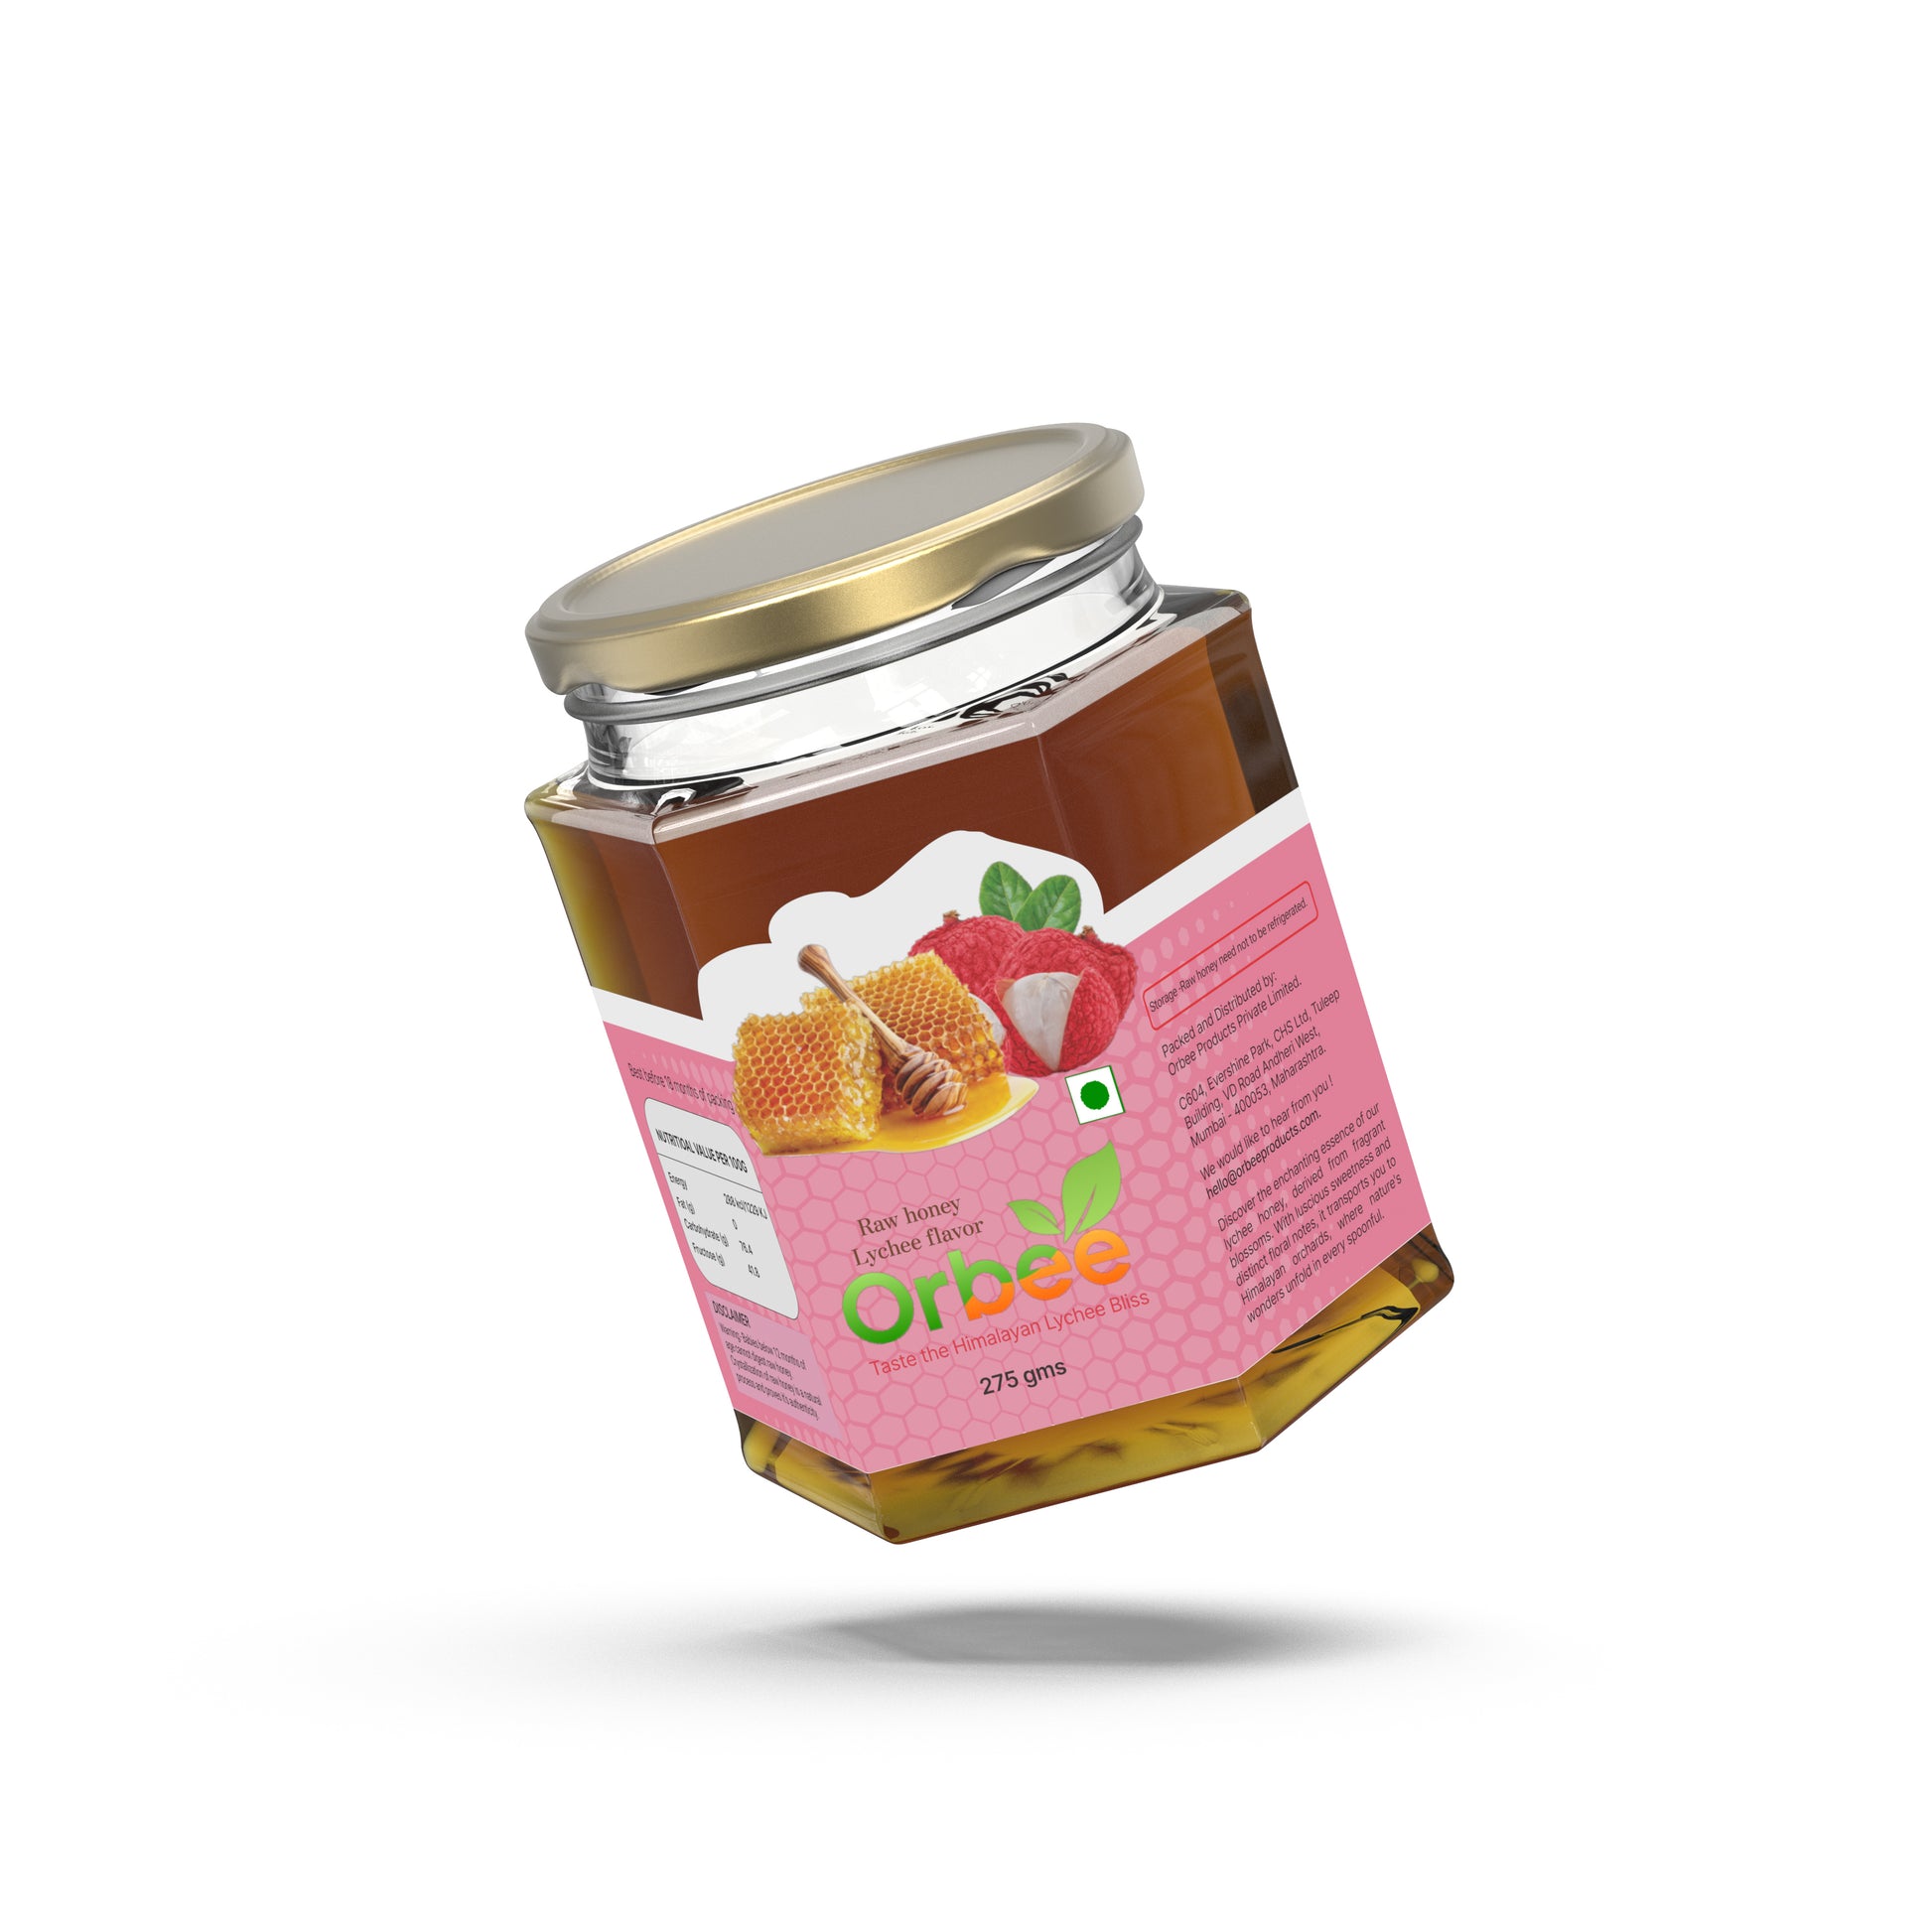 Orbee lychee honey